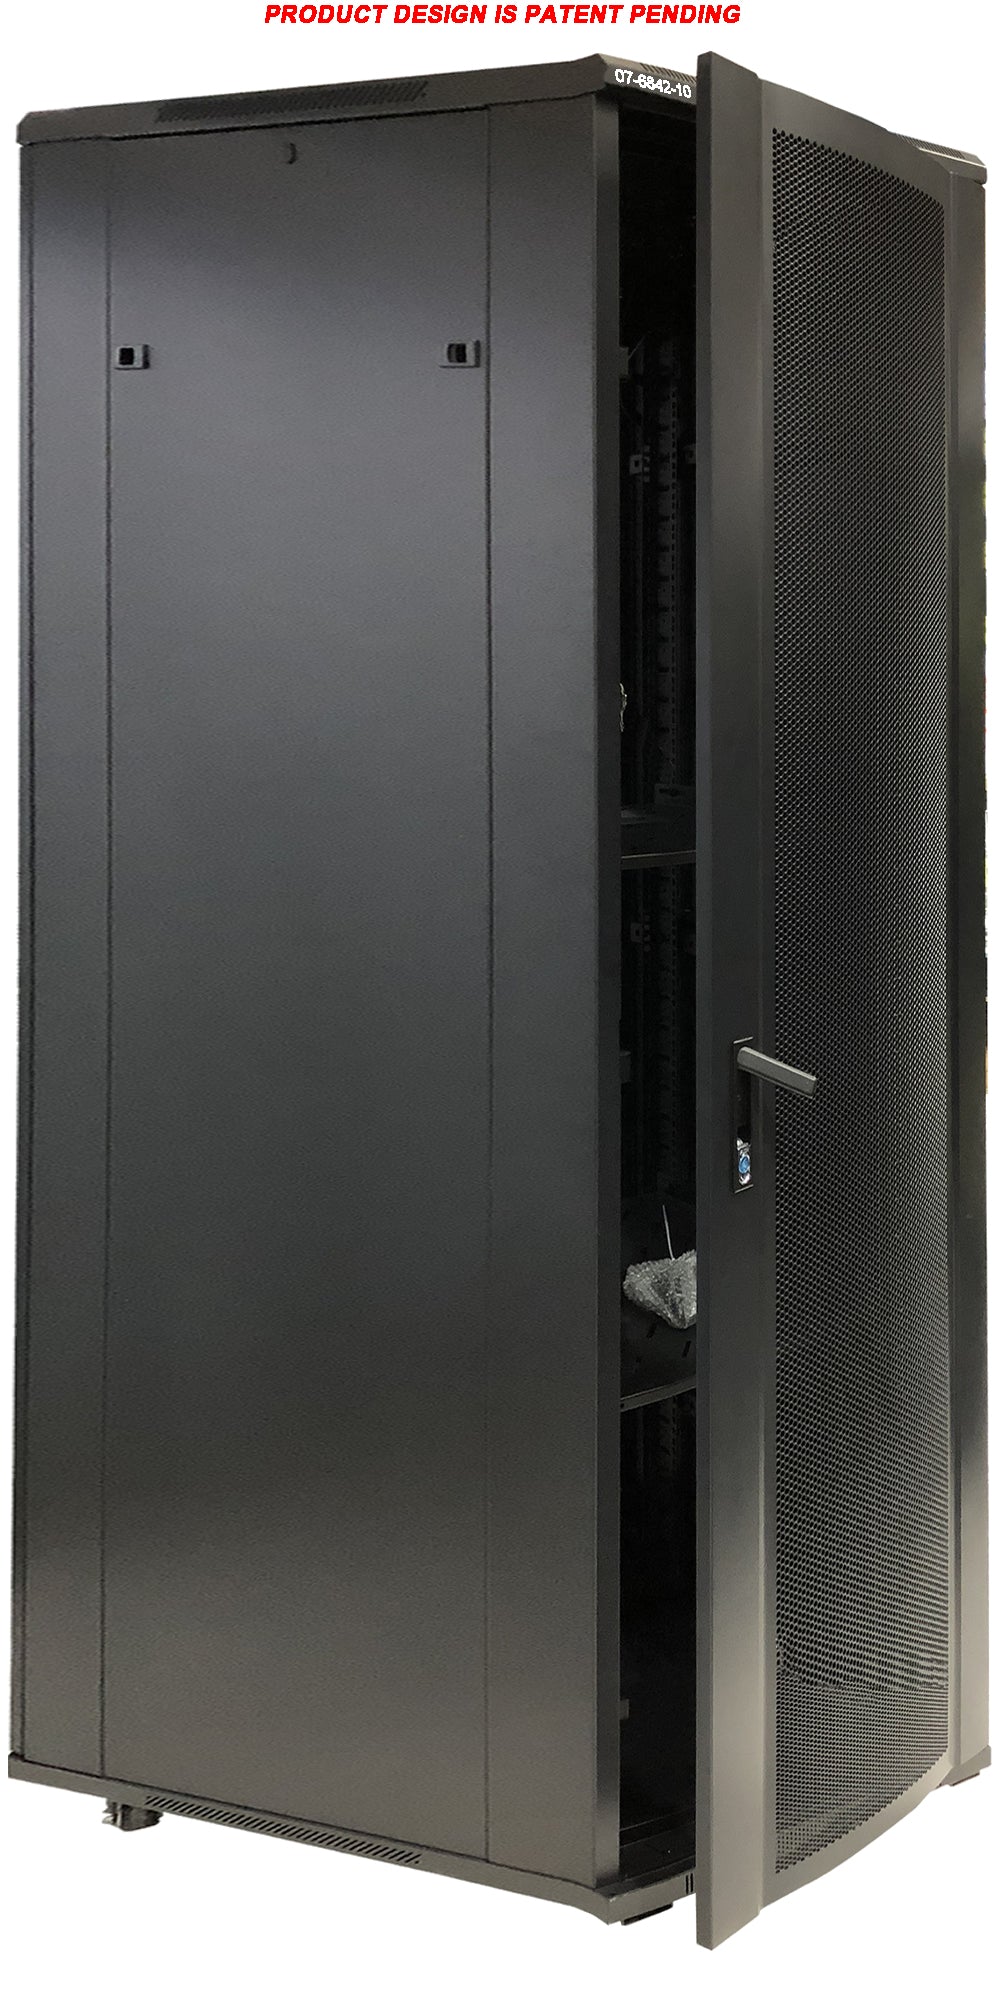 07-6842-10 42U Floor Standing Server Cabinet - 100cm Super Deep, Metal Door, Heavy Duty Caster, Fan & Shelf